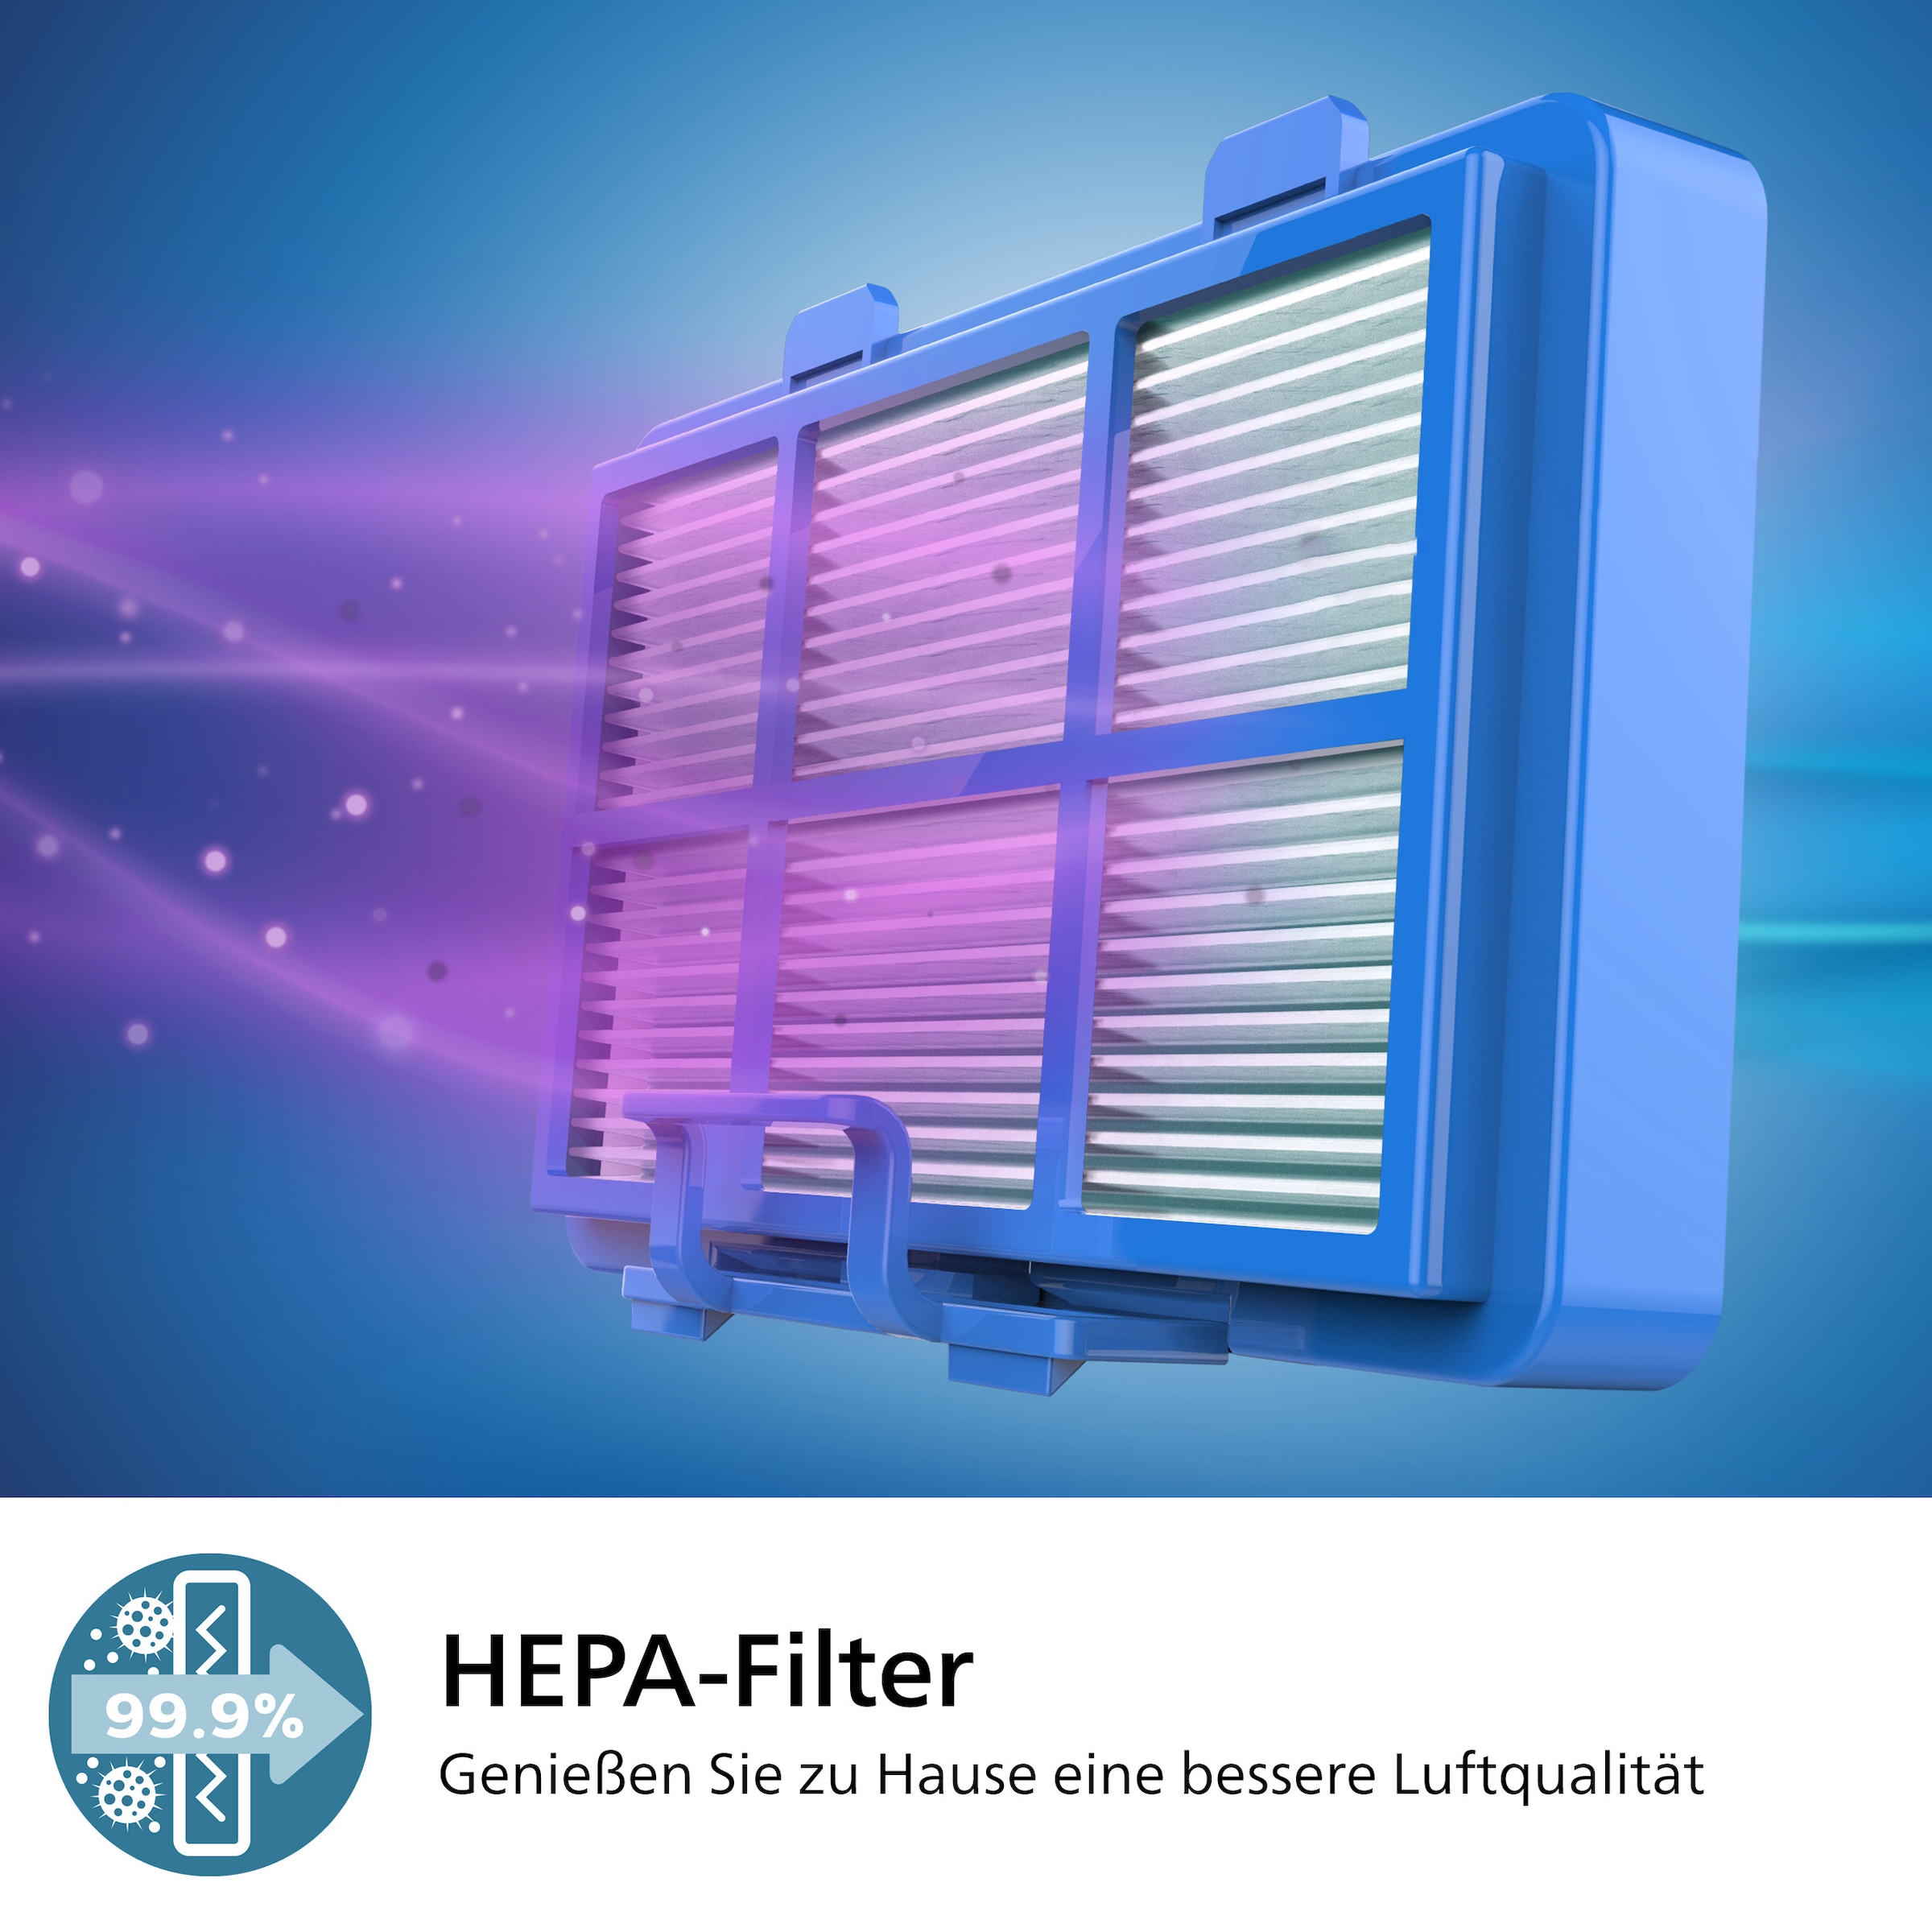 Philips Bodenstaubsauger »XD6122/12 6000 Serie, der Allrounder mit HEPA-Allergiefilter«, 900 W, mit Beutel, 4 l Fassungsvermögen und TriActive+ LED-Düse; Arktic-weiß glänzend